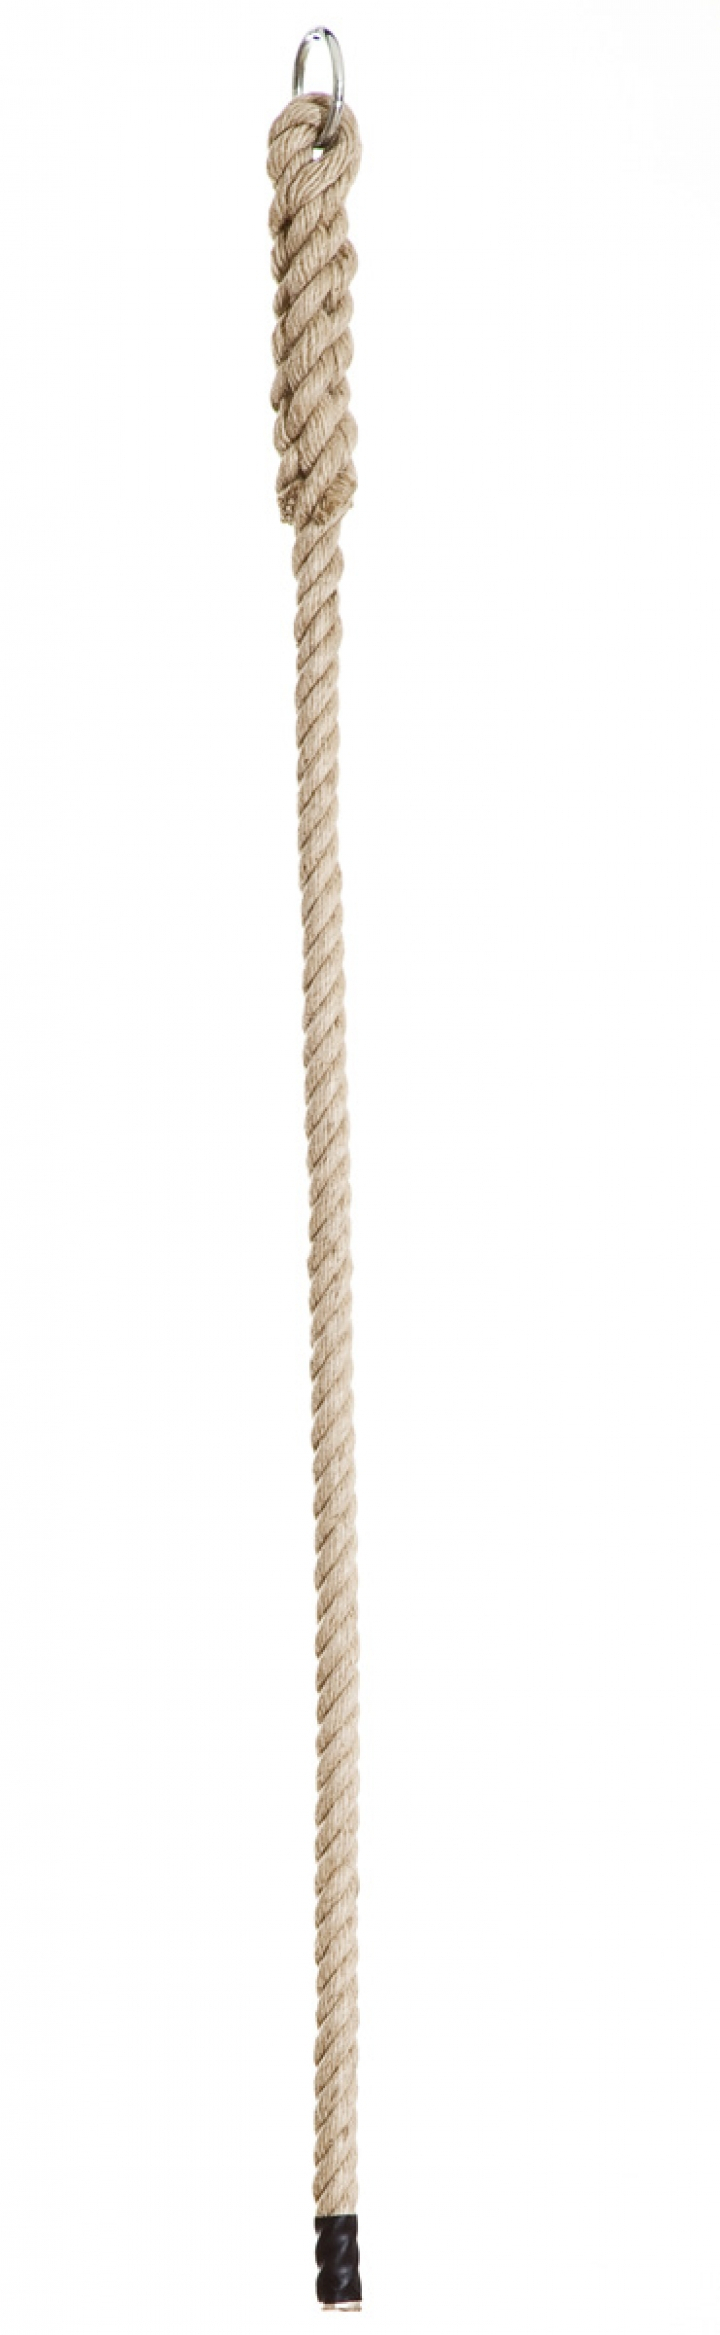 Climbing rope, Ø 28,0mm, length 2m